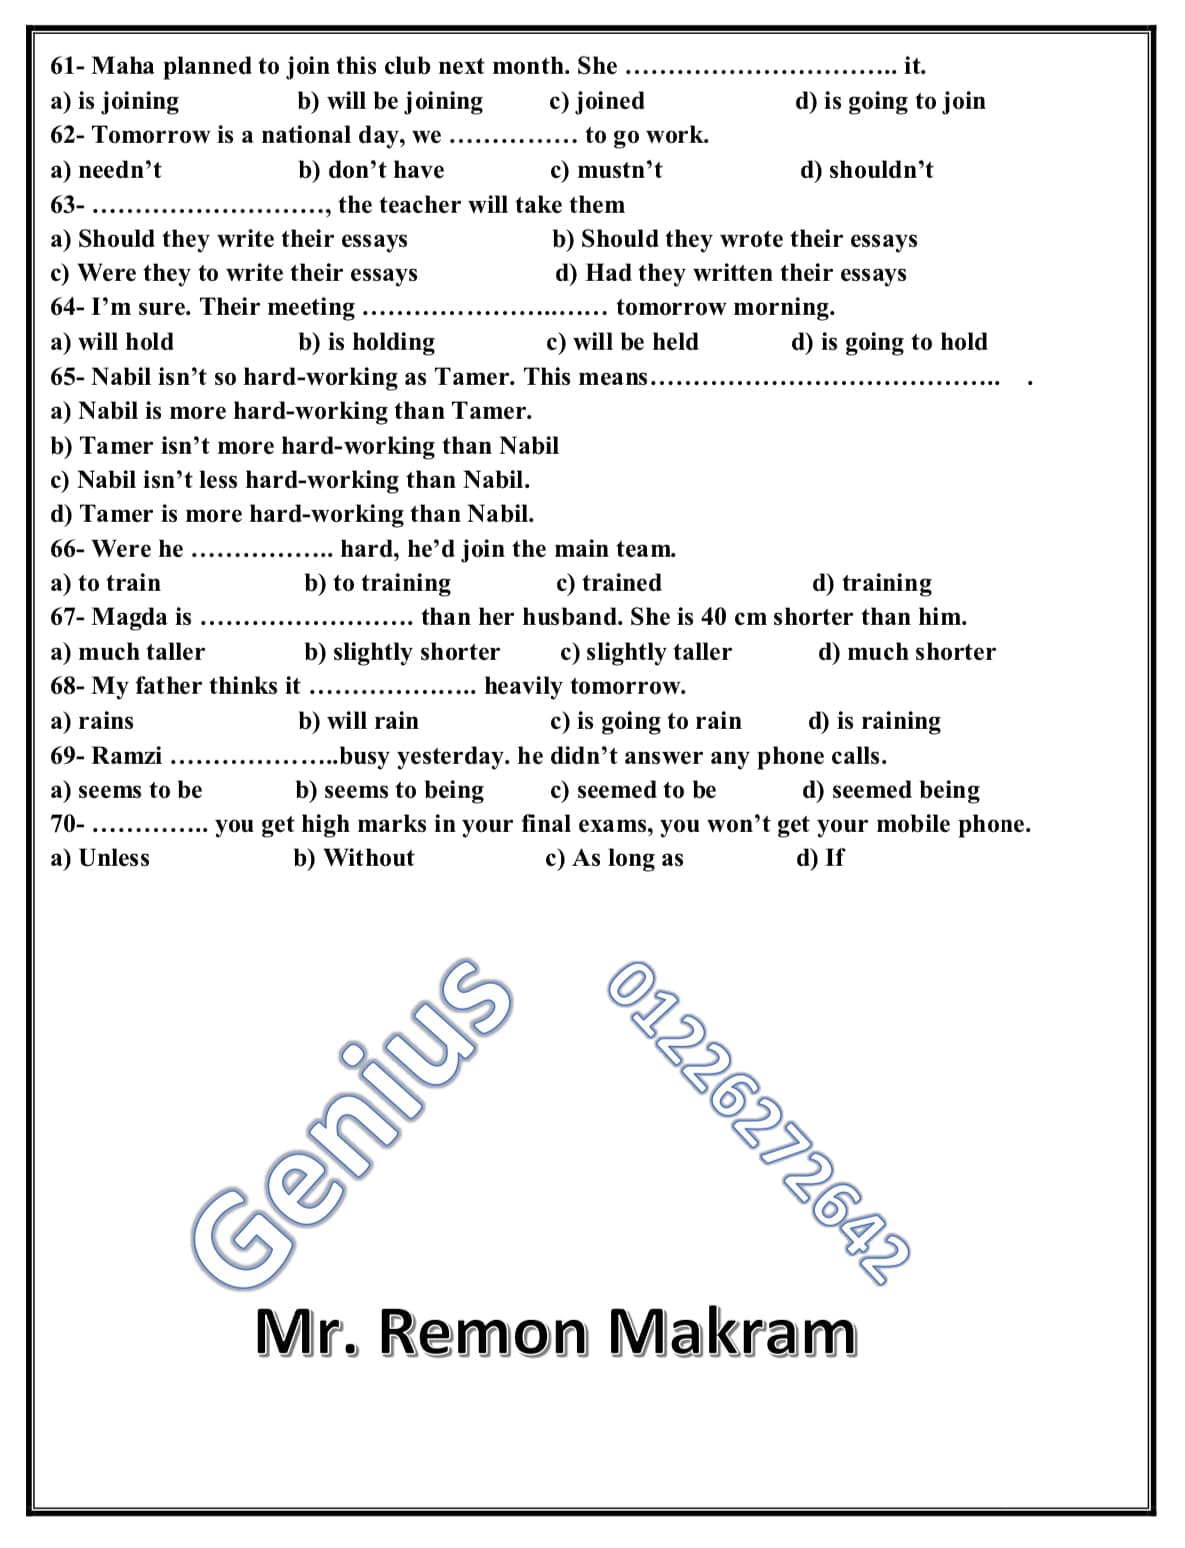 لغة انجليزية | كل الأجزاء الاختيارية للمراجعة النهائية للصف الثانى الثانوى 14